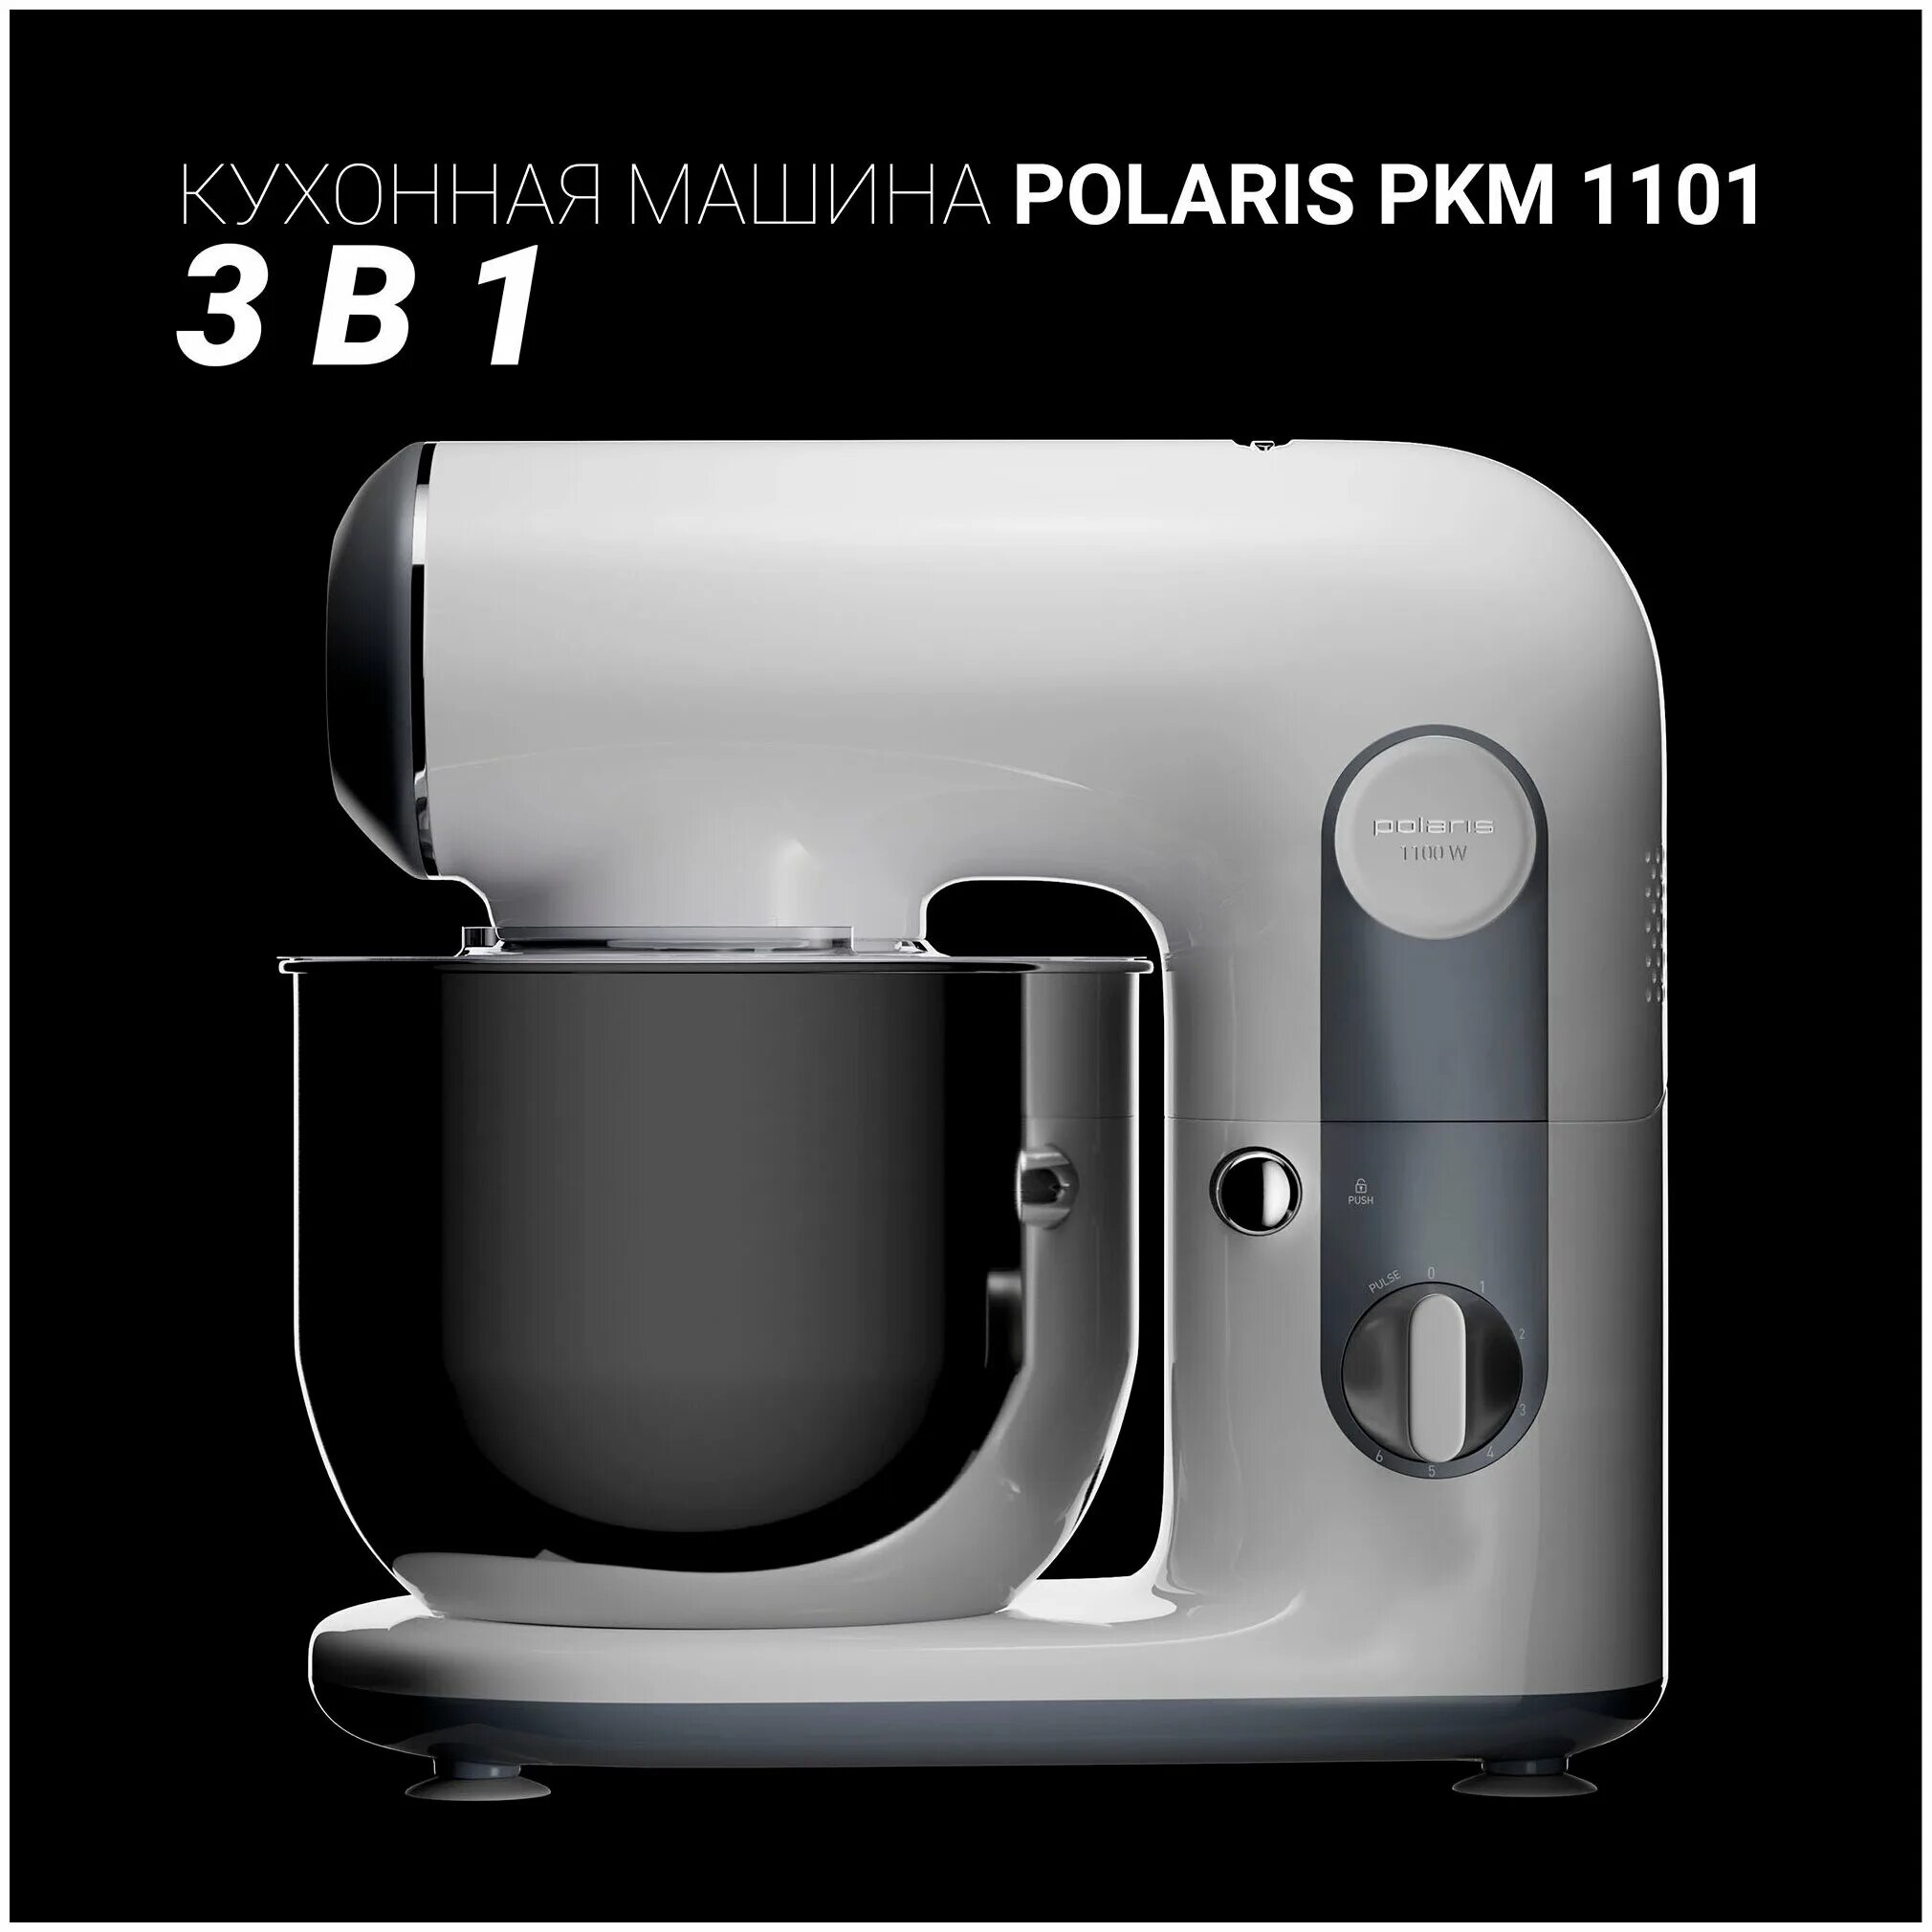 Кухонная машина PKM 1101 Polaris. Миксер планетарный Polaris PKM 1101. Планетарный миксер Поларис 1101. Кухонный комбайн Поларис 5 в 1.